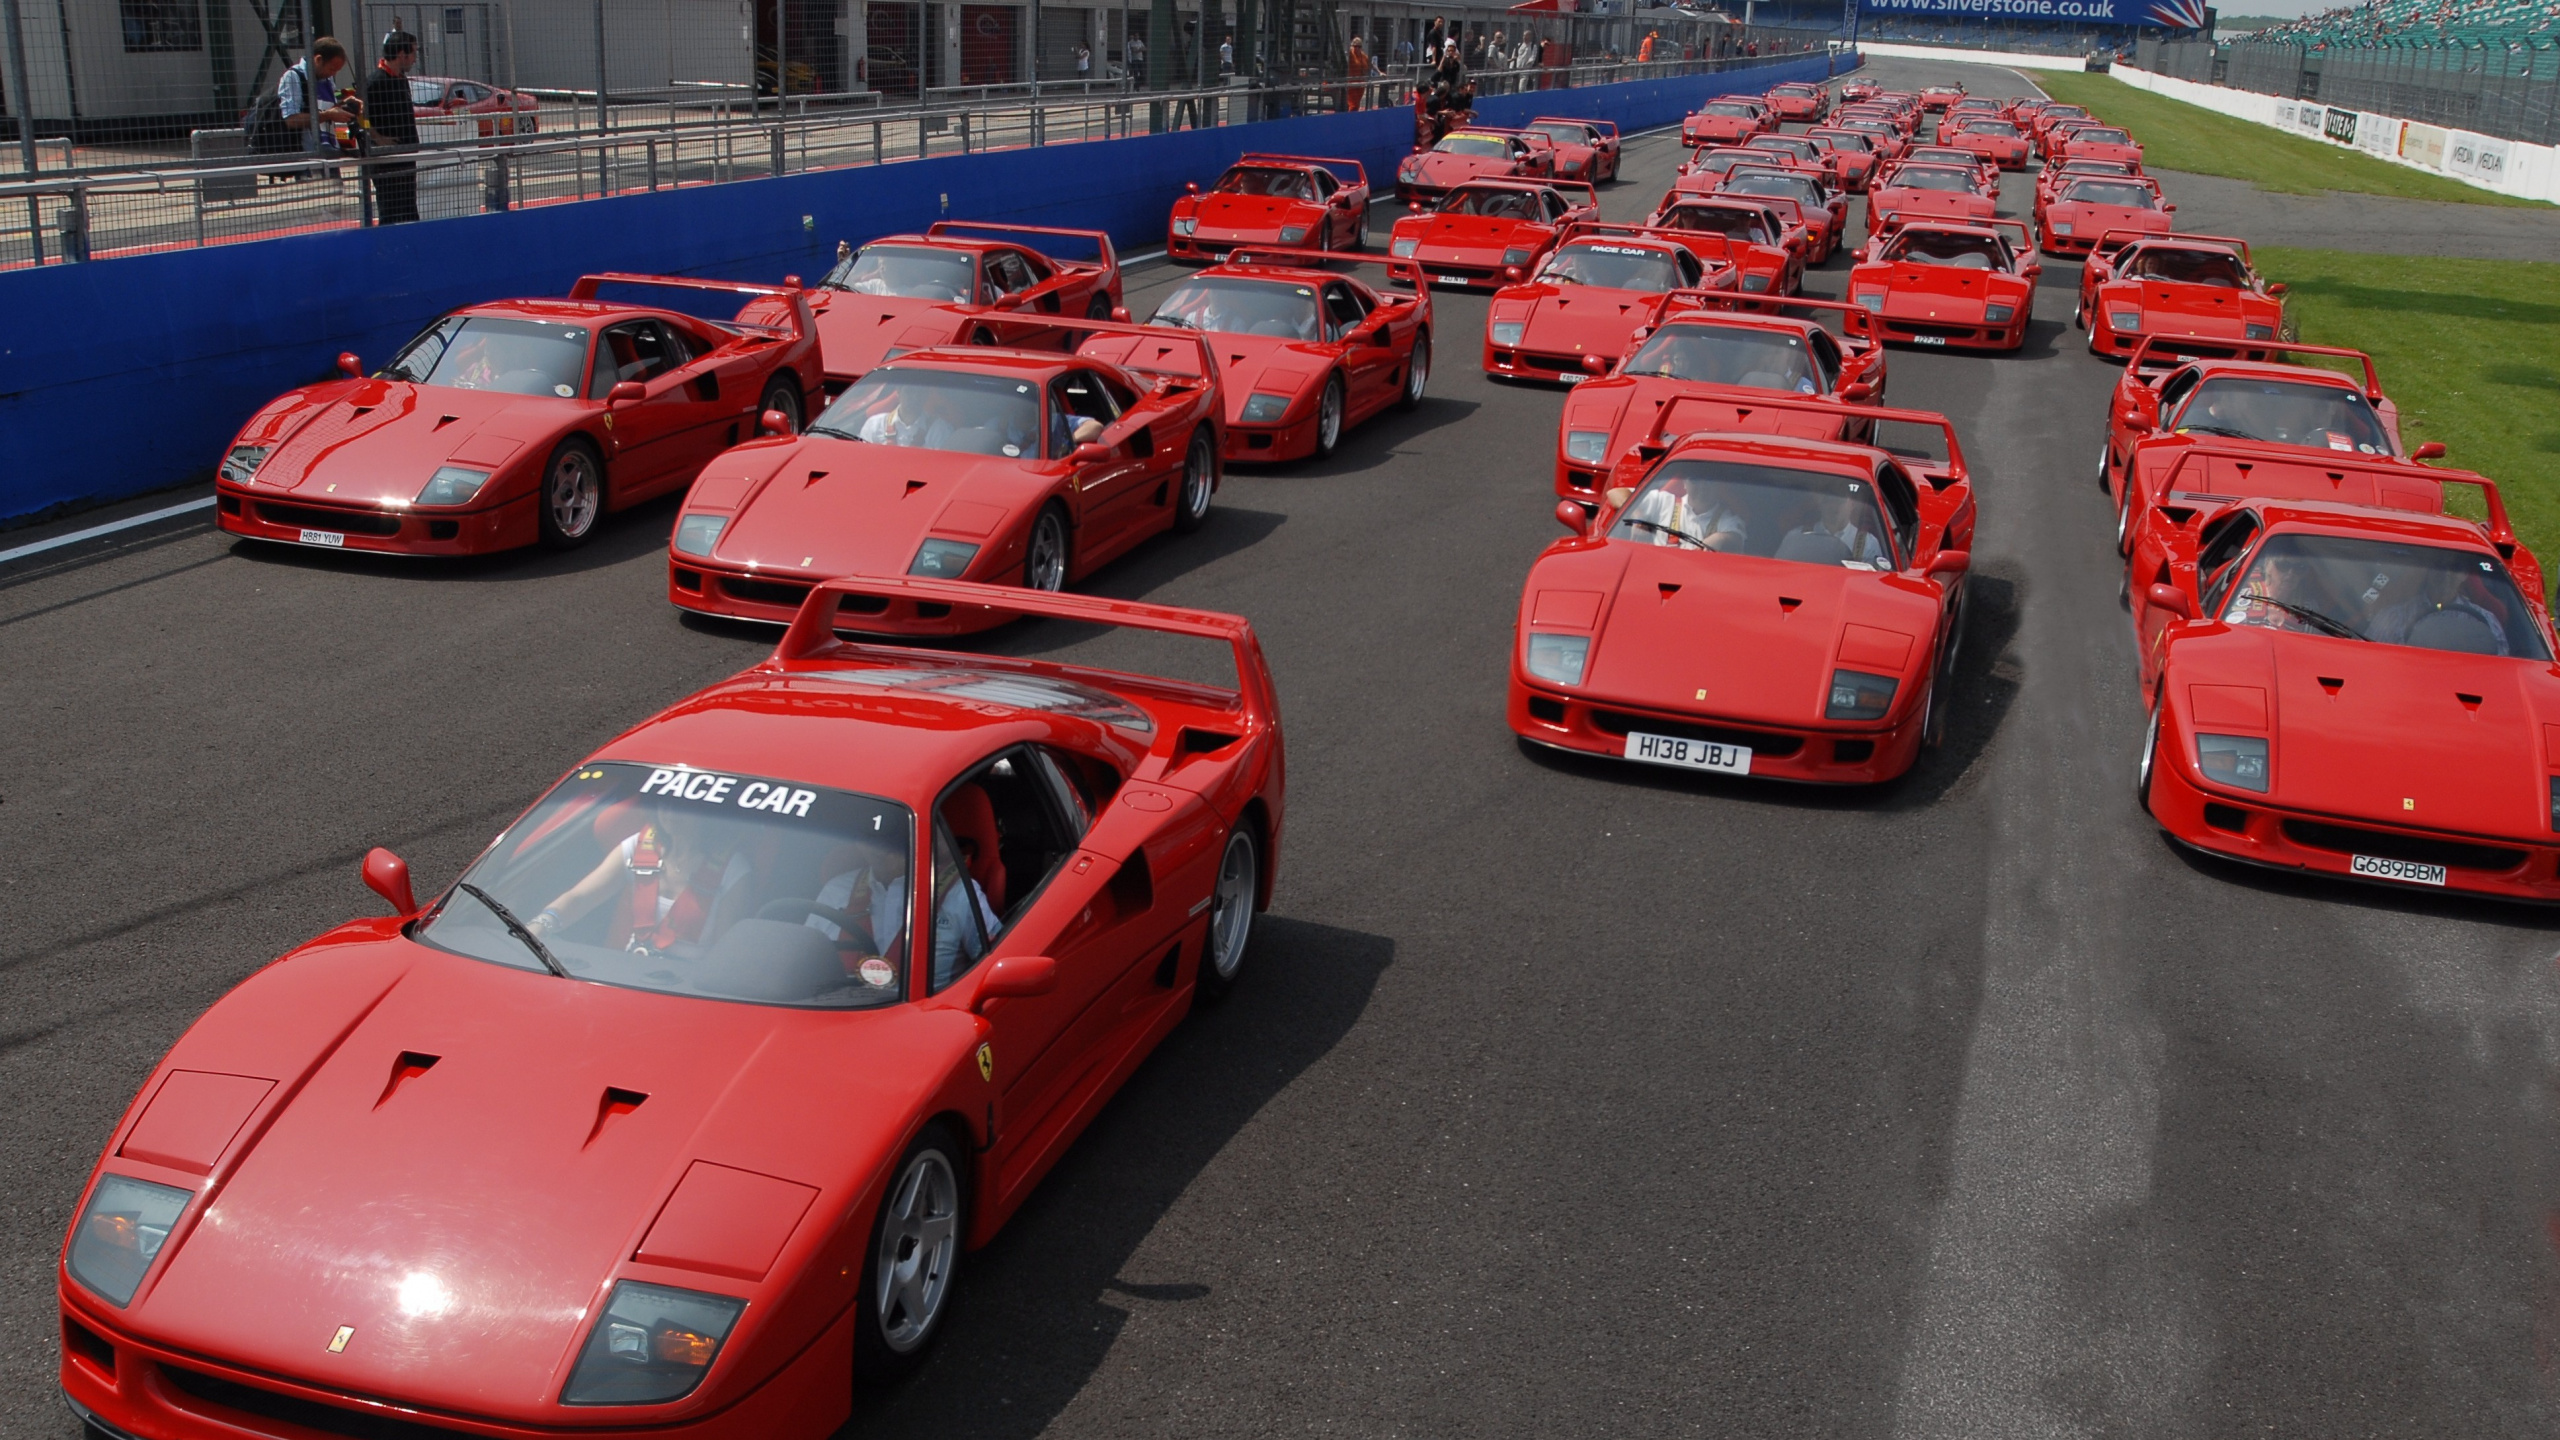 法拉利f40, Laferrari, Ferrari, 超级跑车, 性能车 壁纸 2560x1440 允许